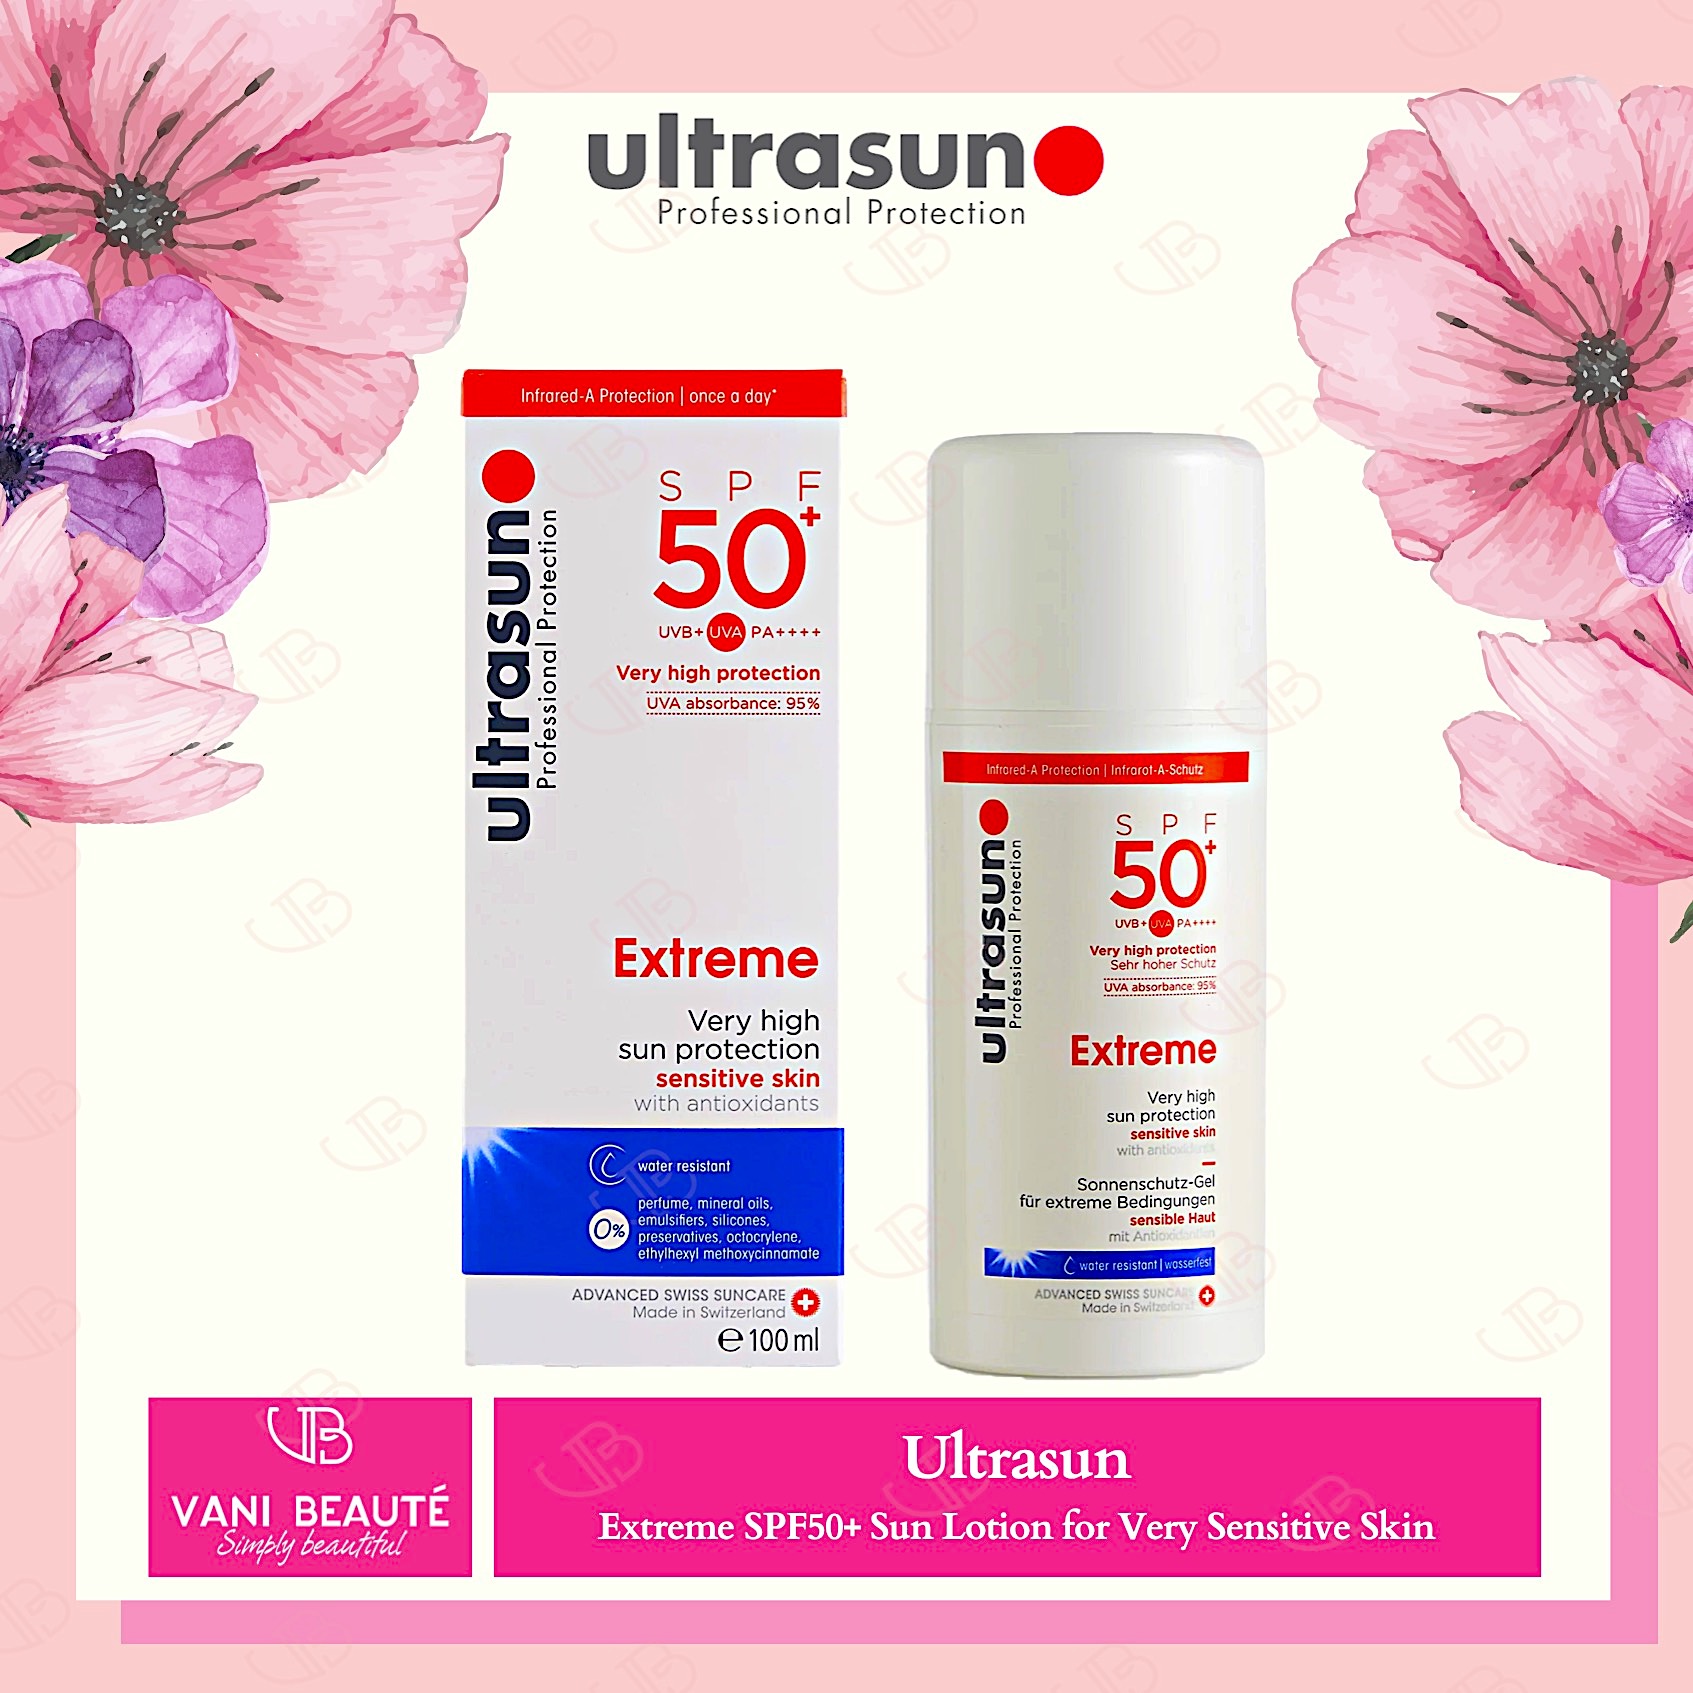 Kem chống nắng Ultrasun Đỏ Extreme SPF50+ Sun Lotion for Very Sensitive Skin 100ml/150ml